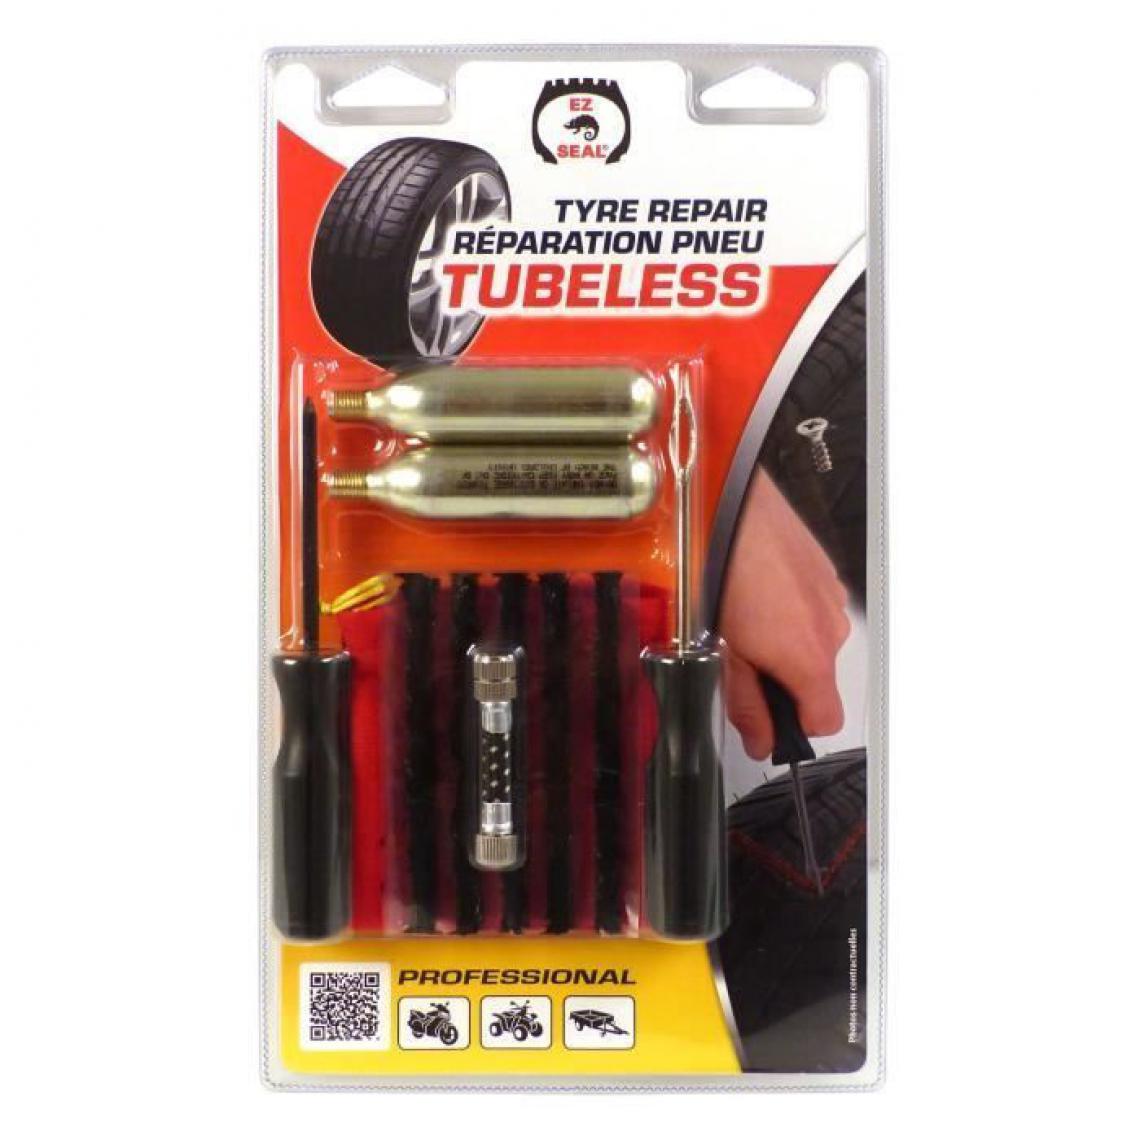 Sans Marque - EZ-SEAL Kit de reparation tubeless - Coffrets outils